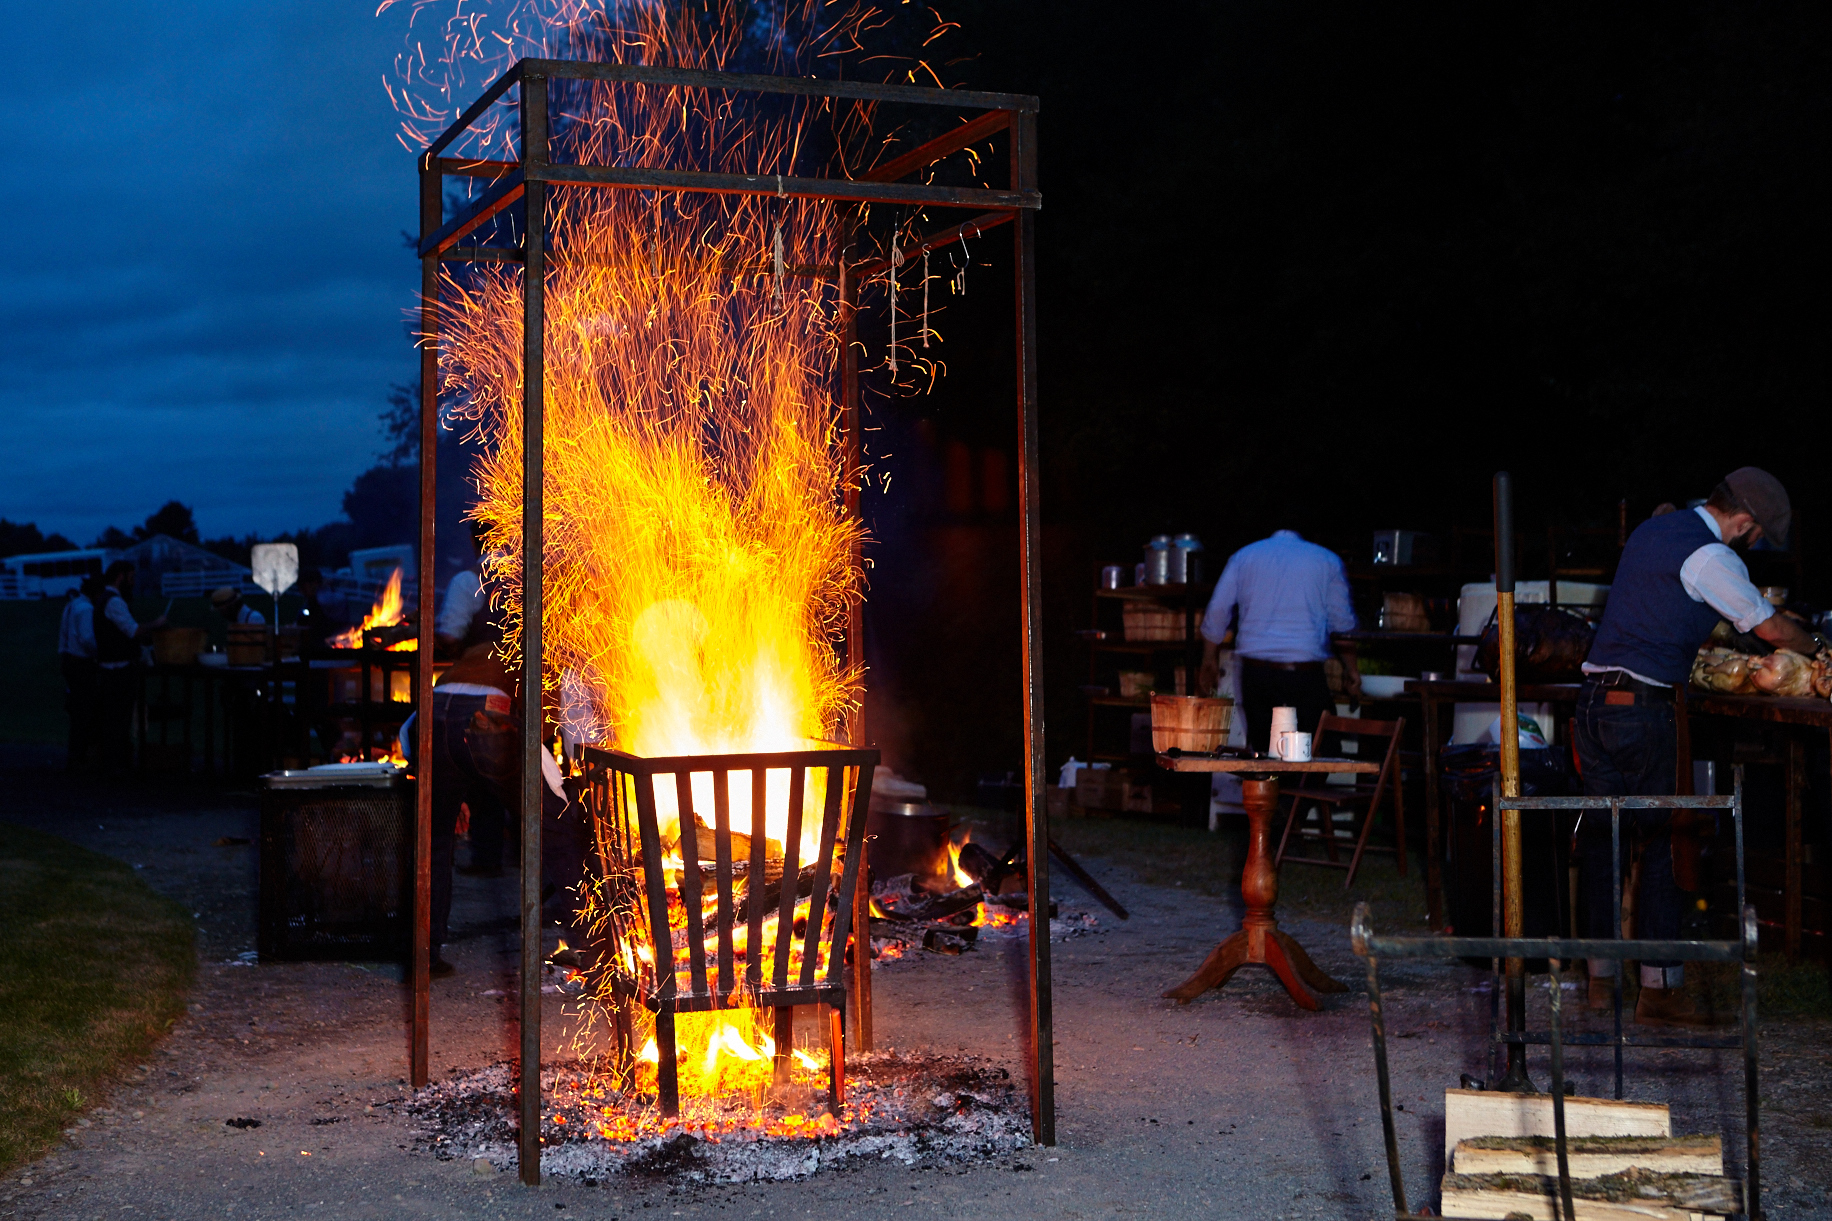 evening outdoor cooking - fire.jpg